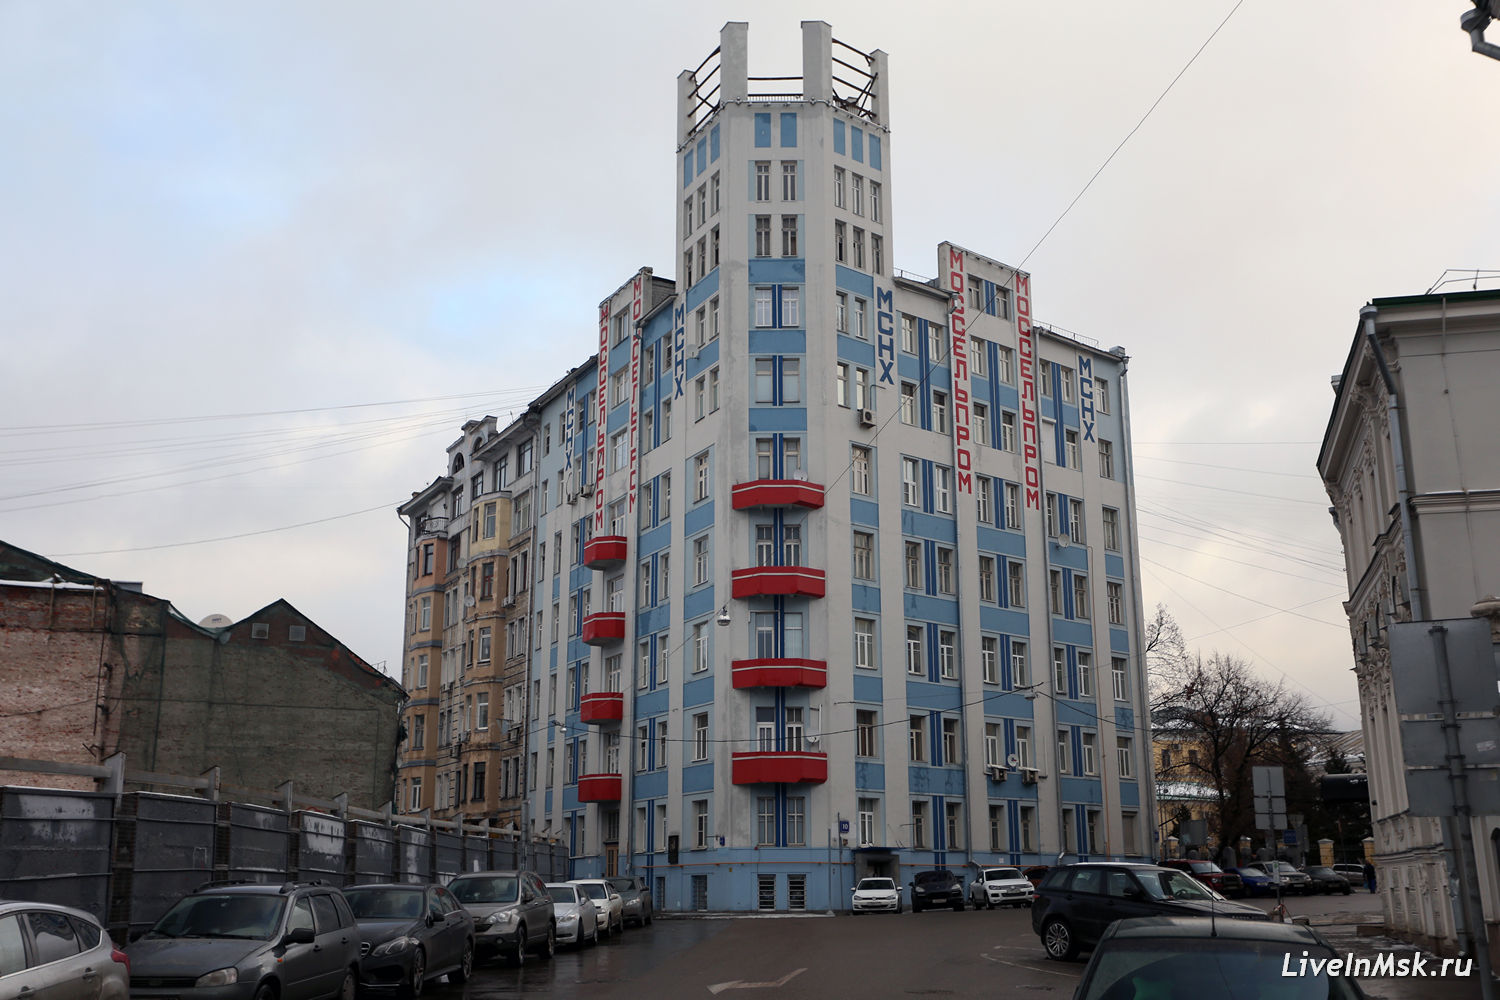 Дом Моссельпрома, фото 2015 года